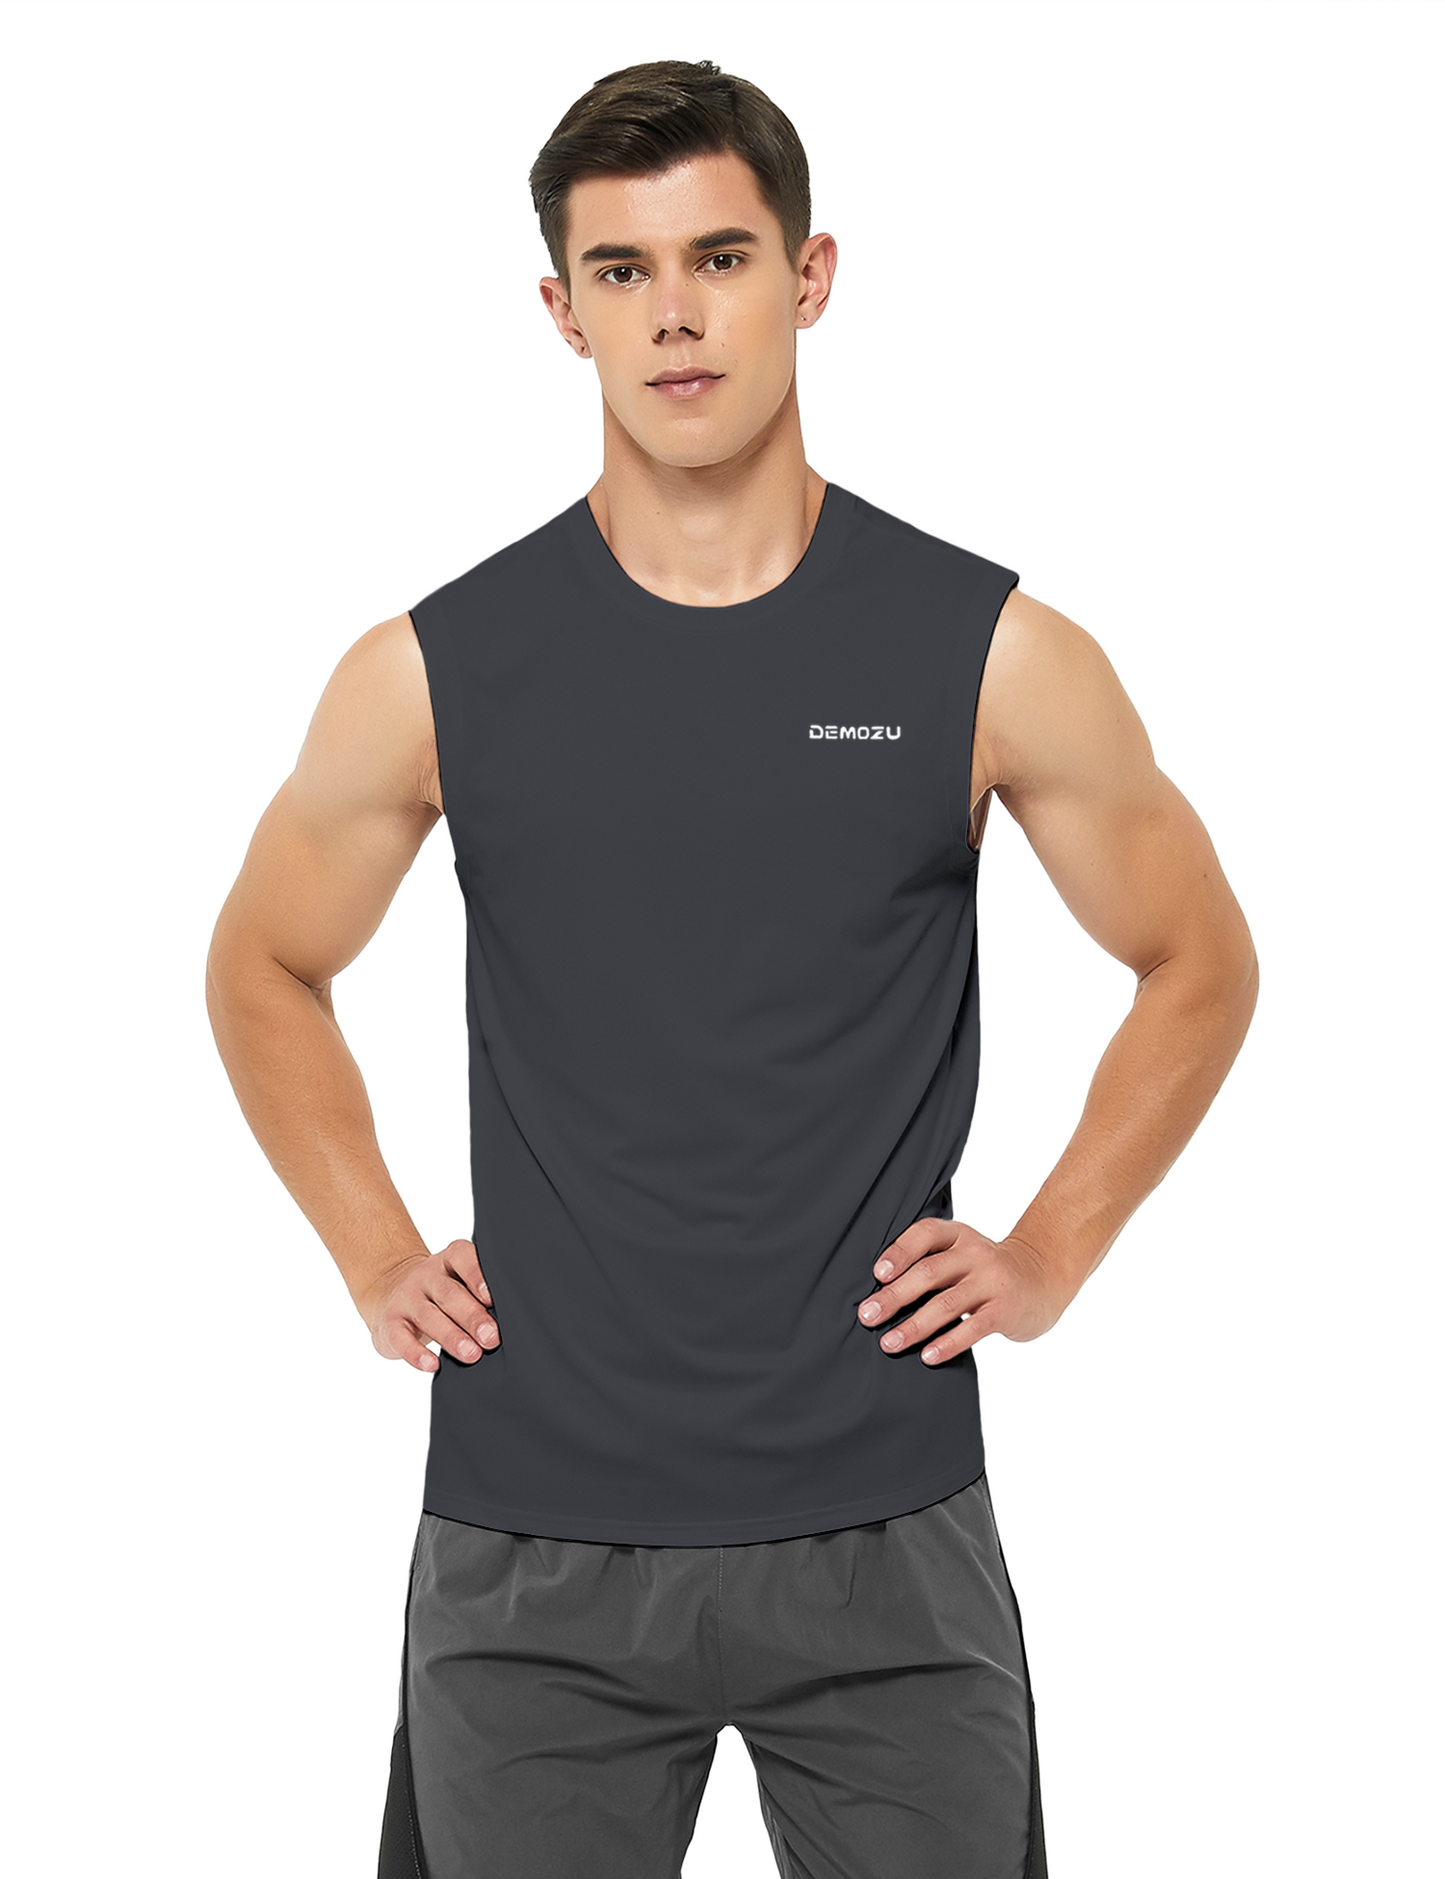 mens sleeveless workout swim shirts charcoal